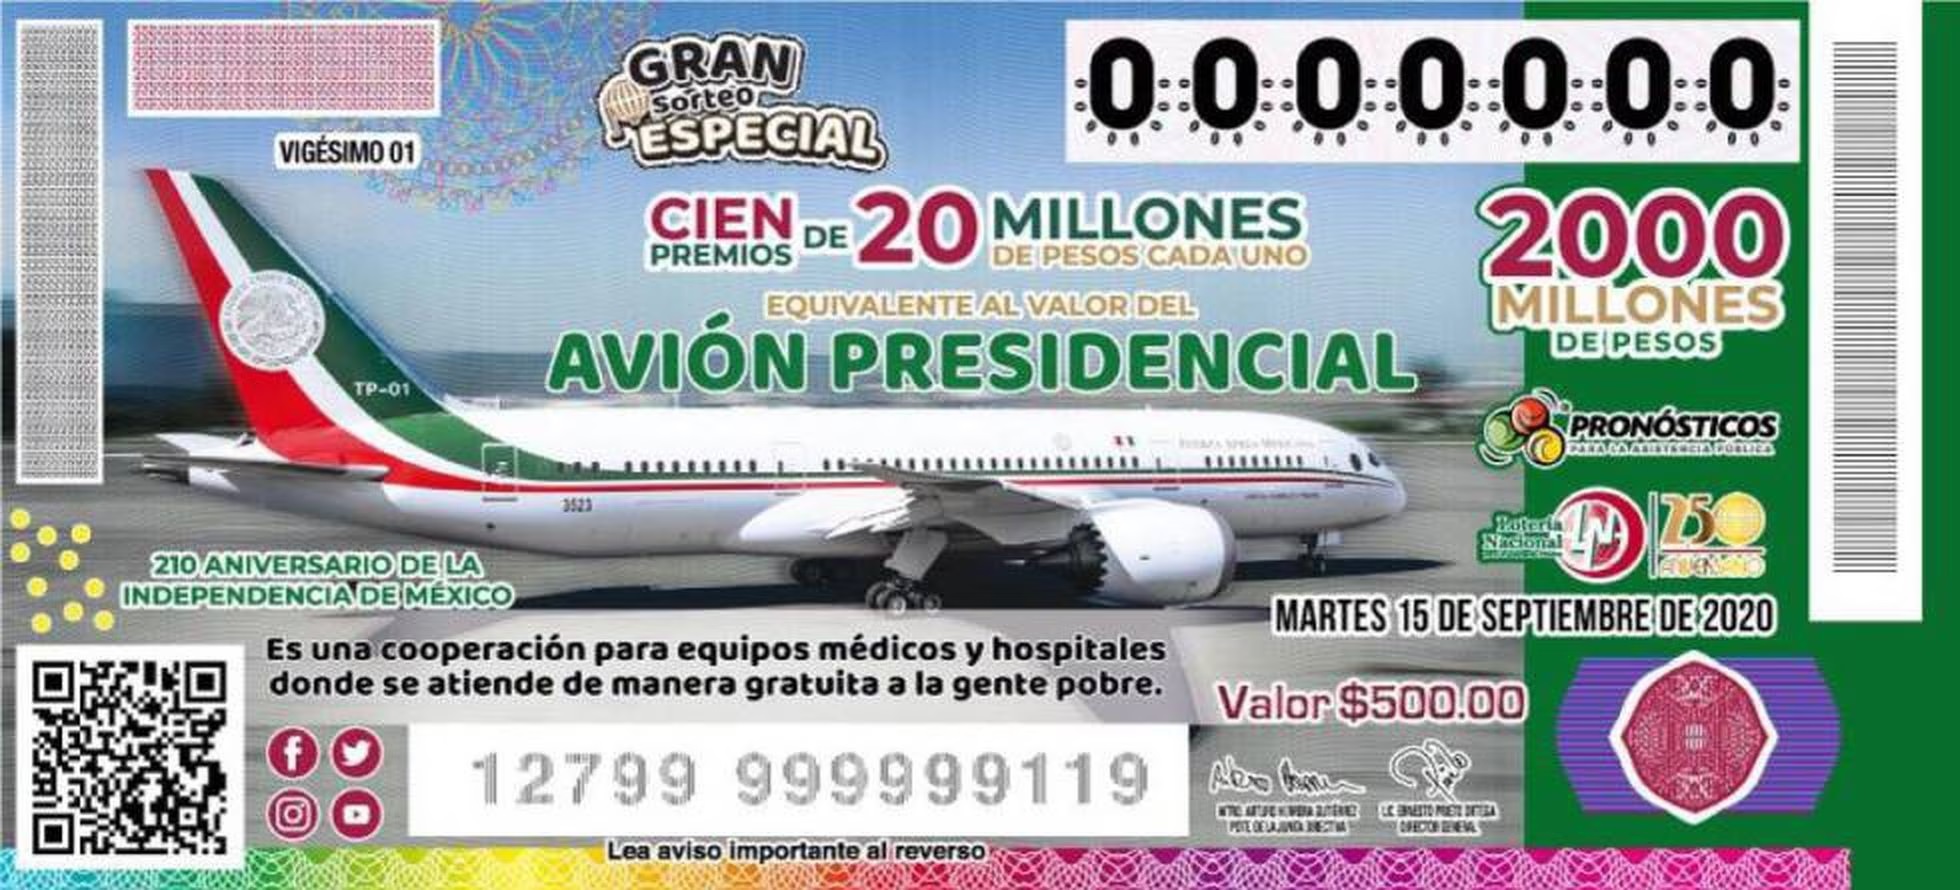 AMLO Andrés Manuel López Obrador avión presidencial Boeing 787 José María Ma. Morelos Pavón rifa 2020